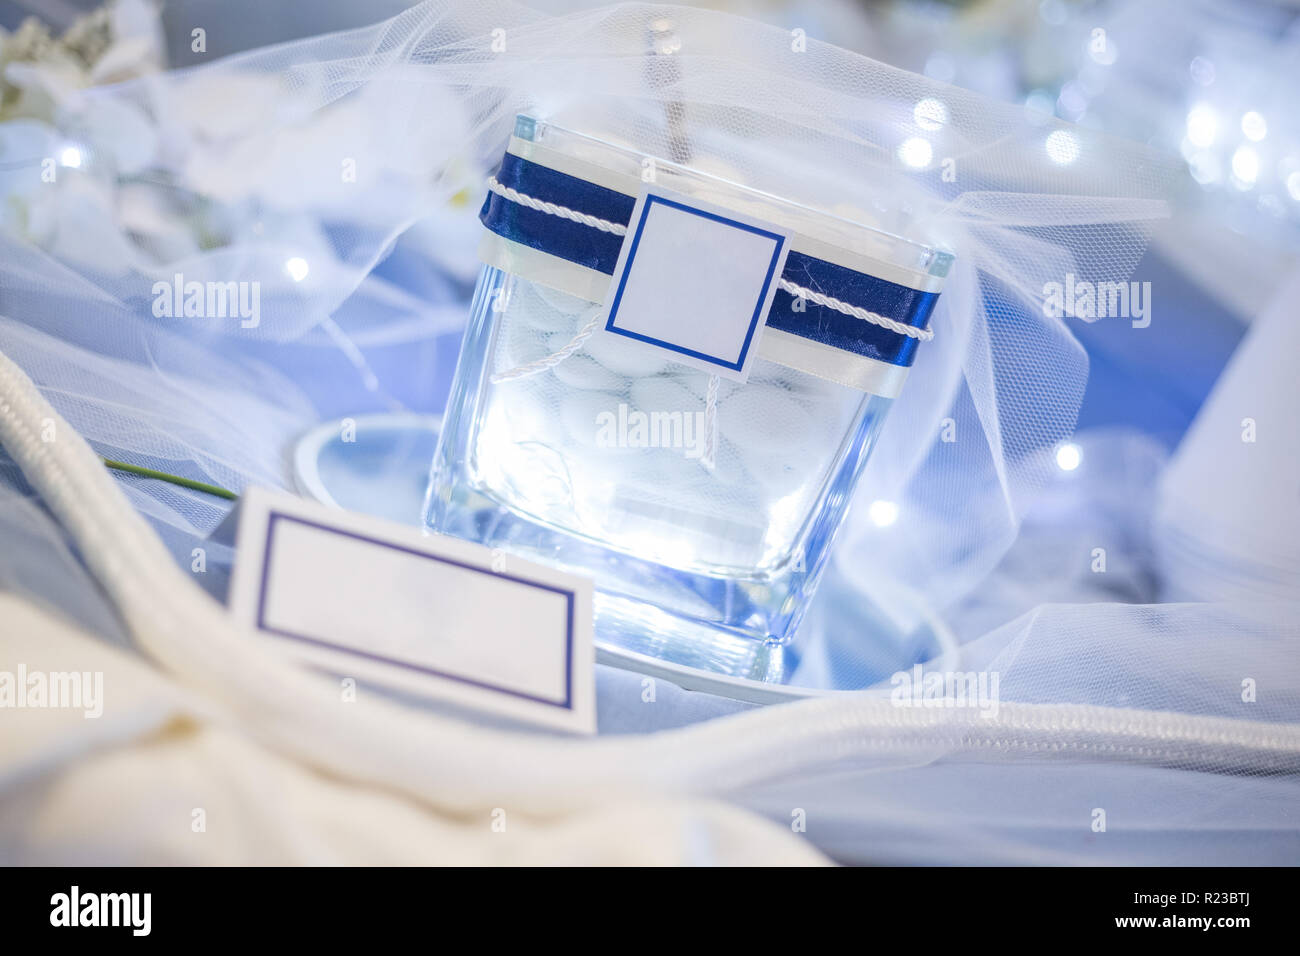 Vaso illuminato con i confetti con white label per personalizzare l'immagine, la corda per la decorazione e il cono per confetti sul tavolo blu. Foto Stock